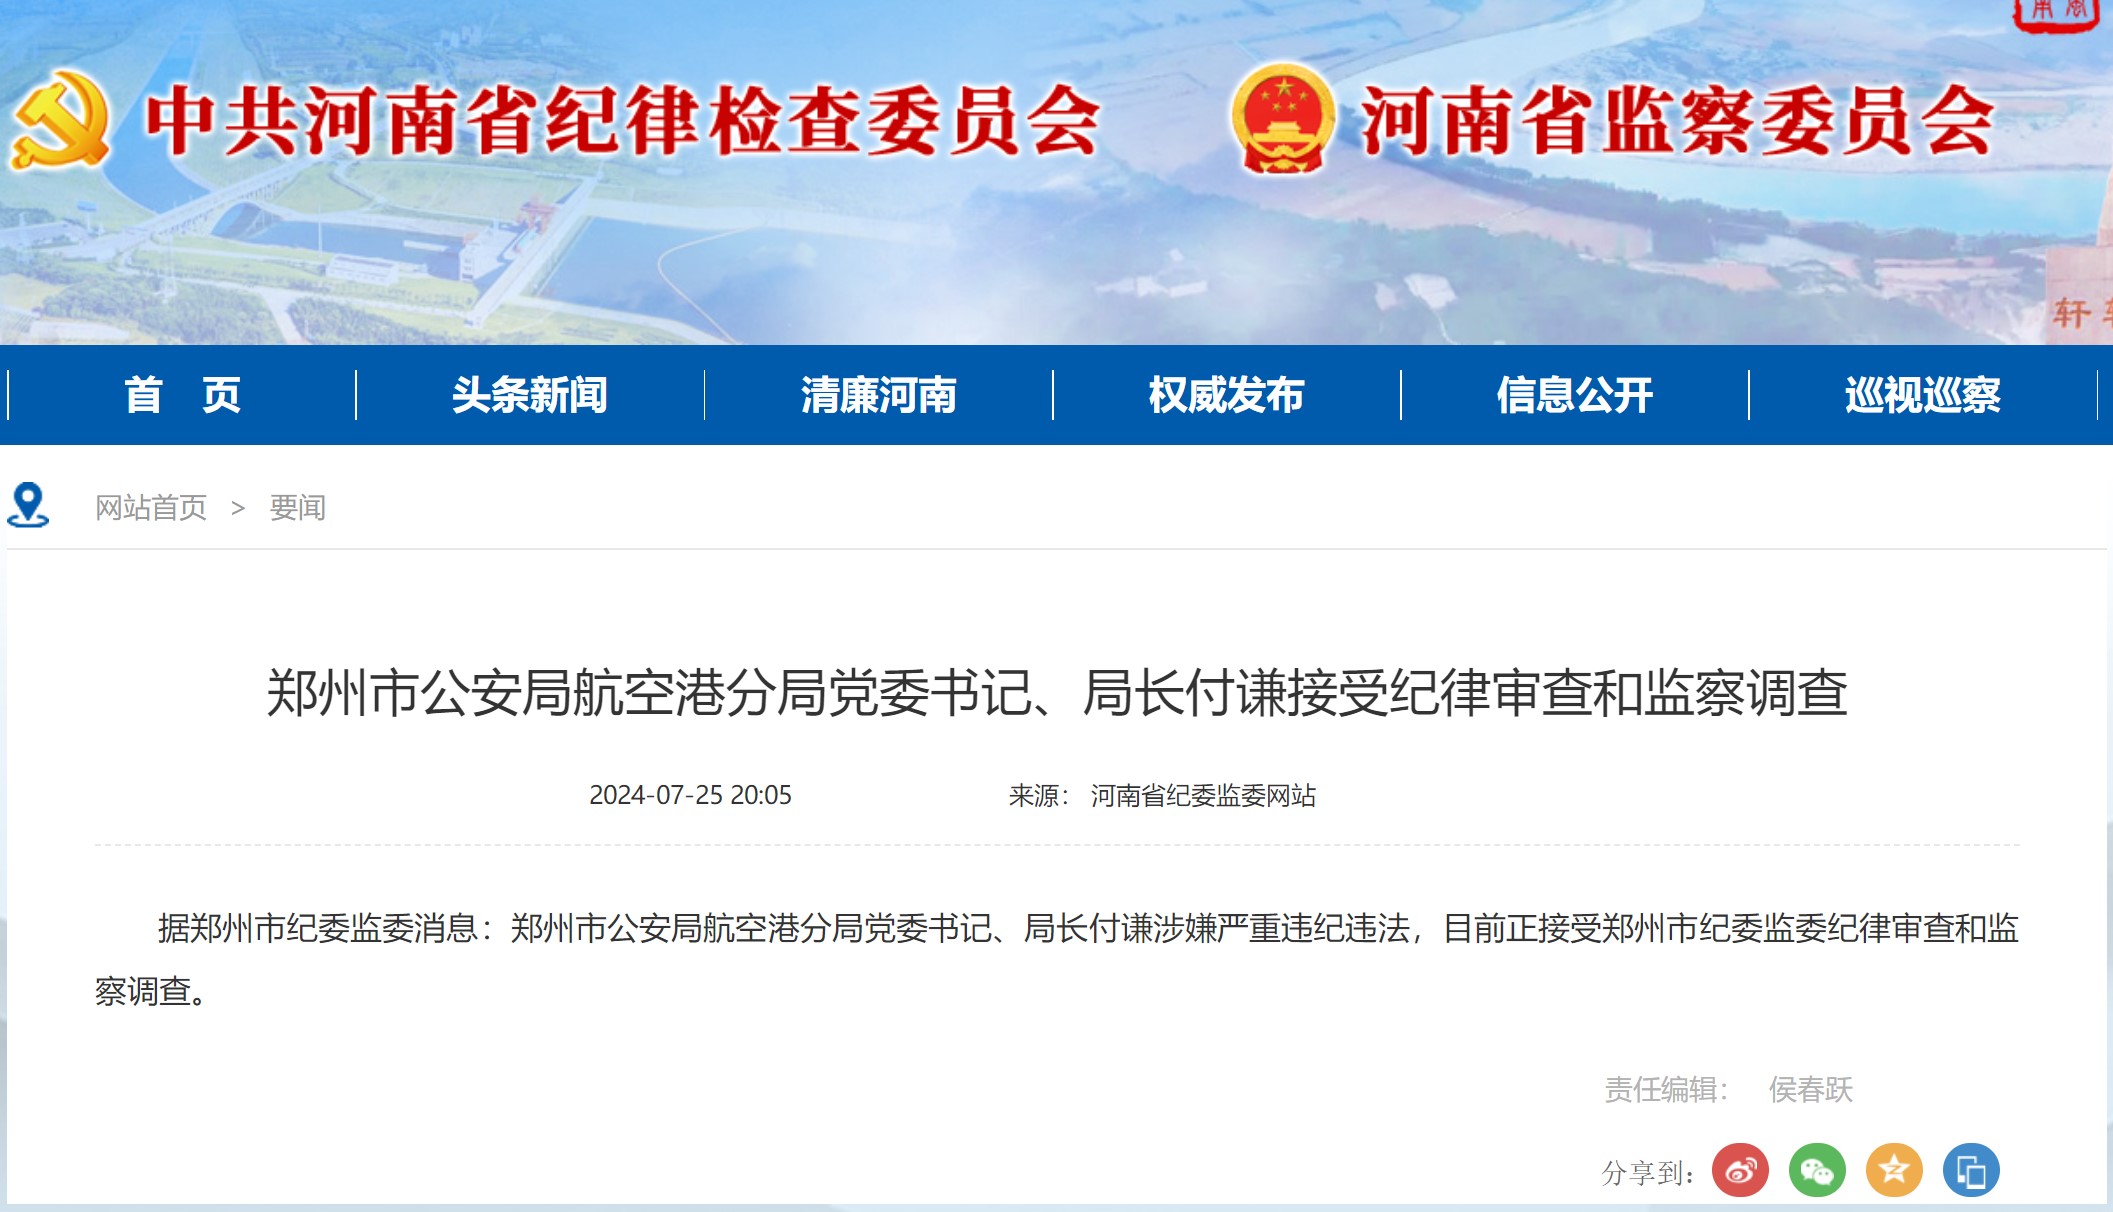 郑州市公安局航空港分局党委书记、局长付谦接受纪律审查和监察调查